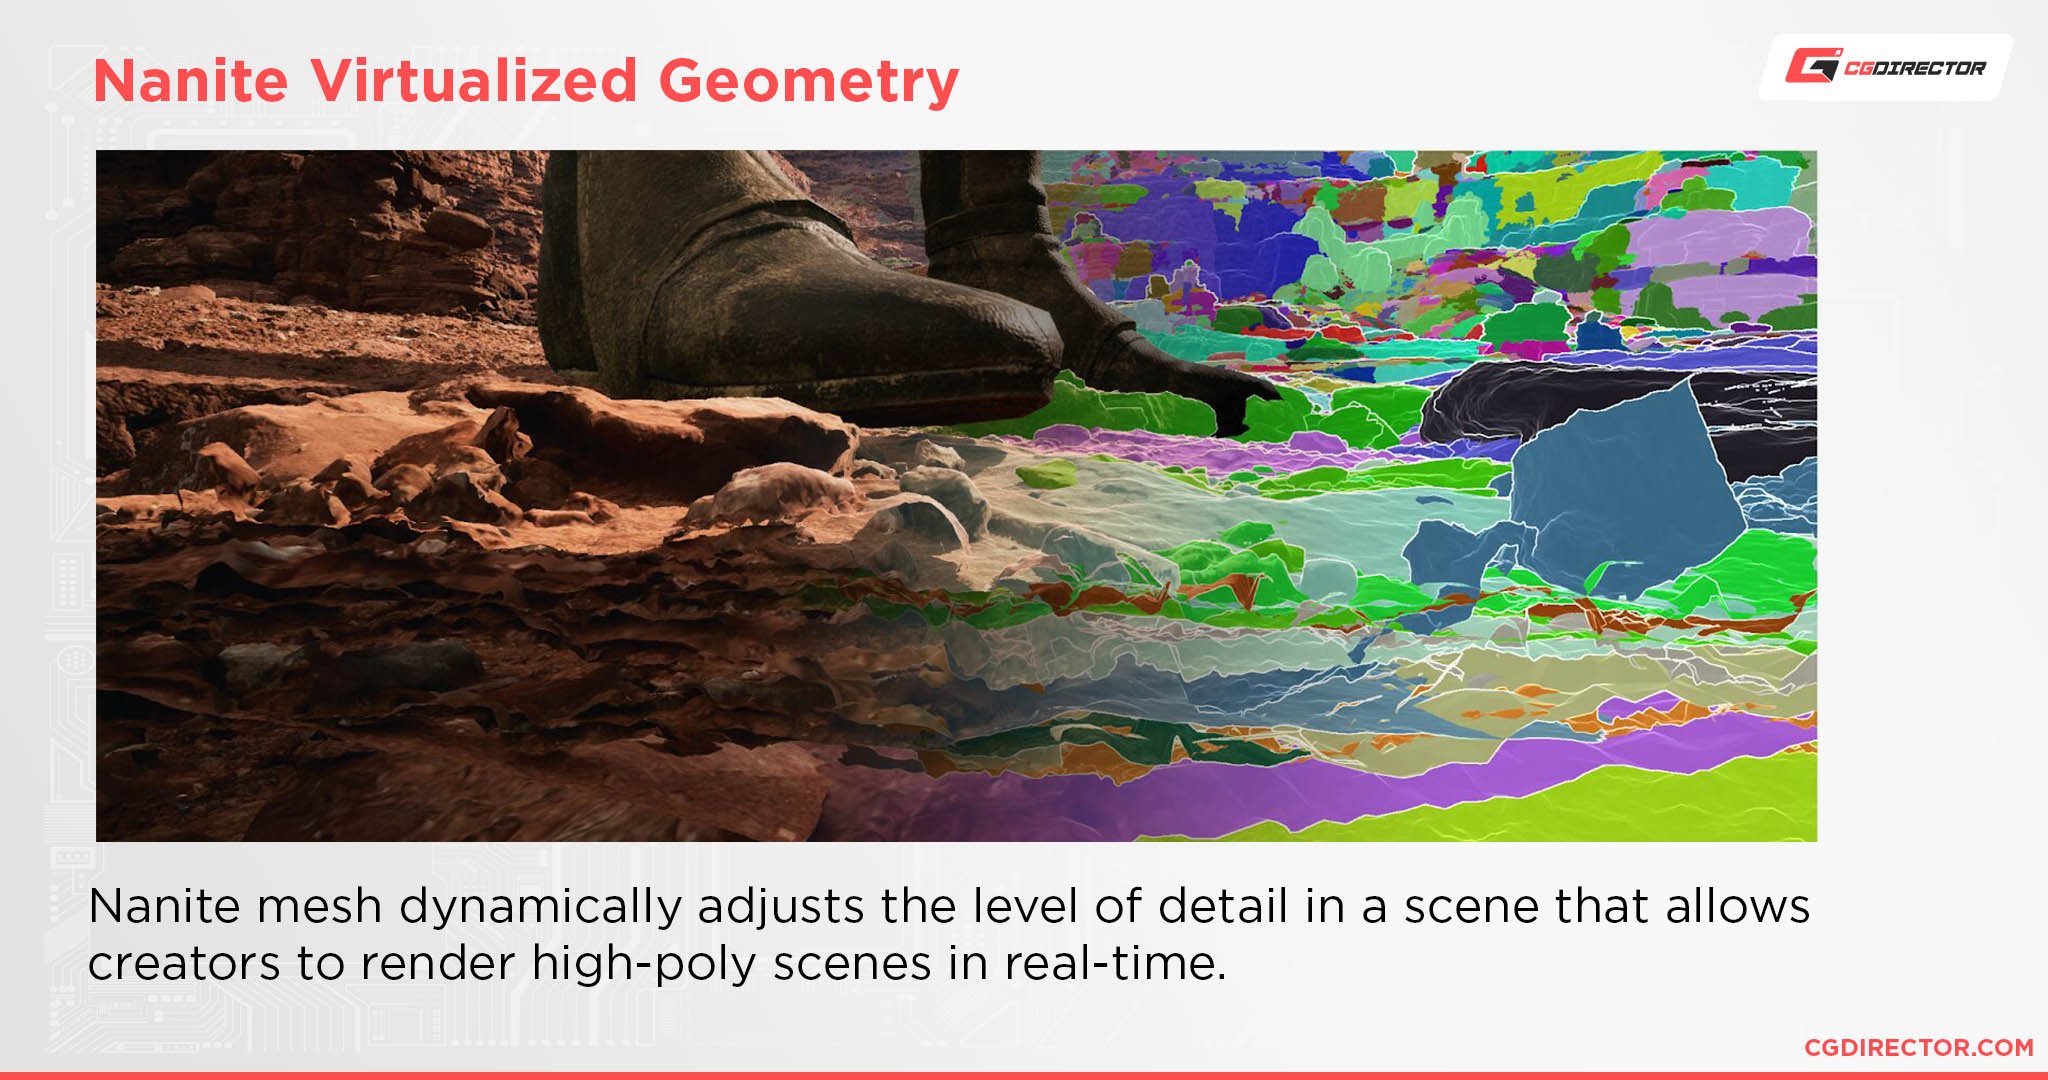 Nanite Virtualized Geometry